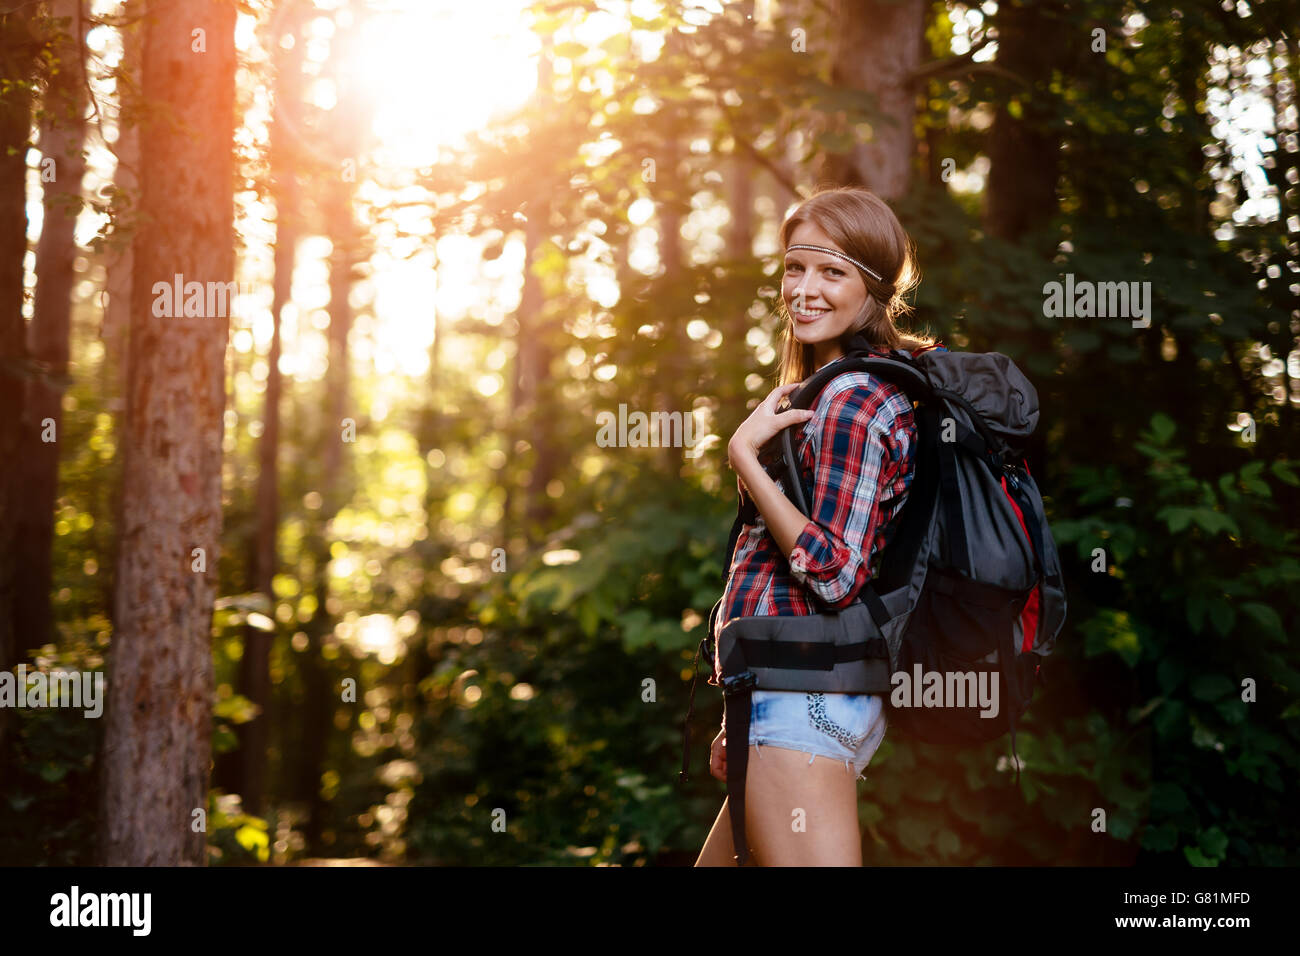 Belle femme randonnées en forêt de transporter un sac à dos Banque D'Images